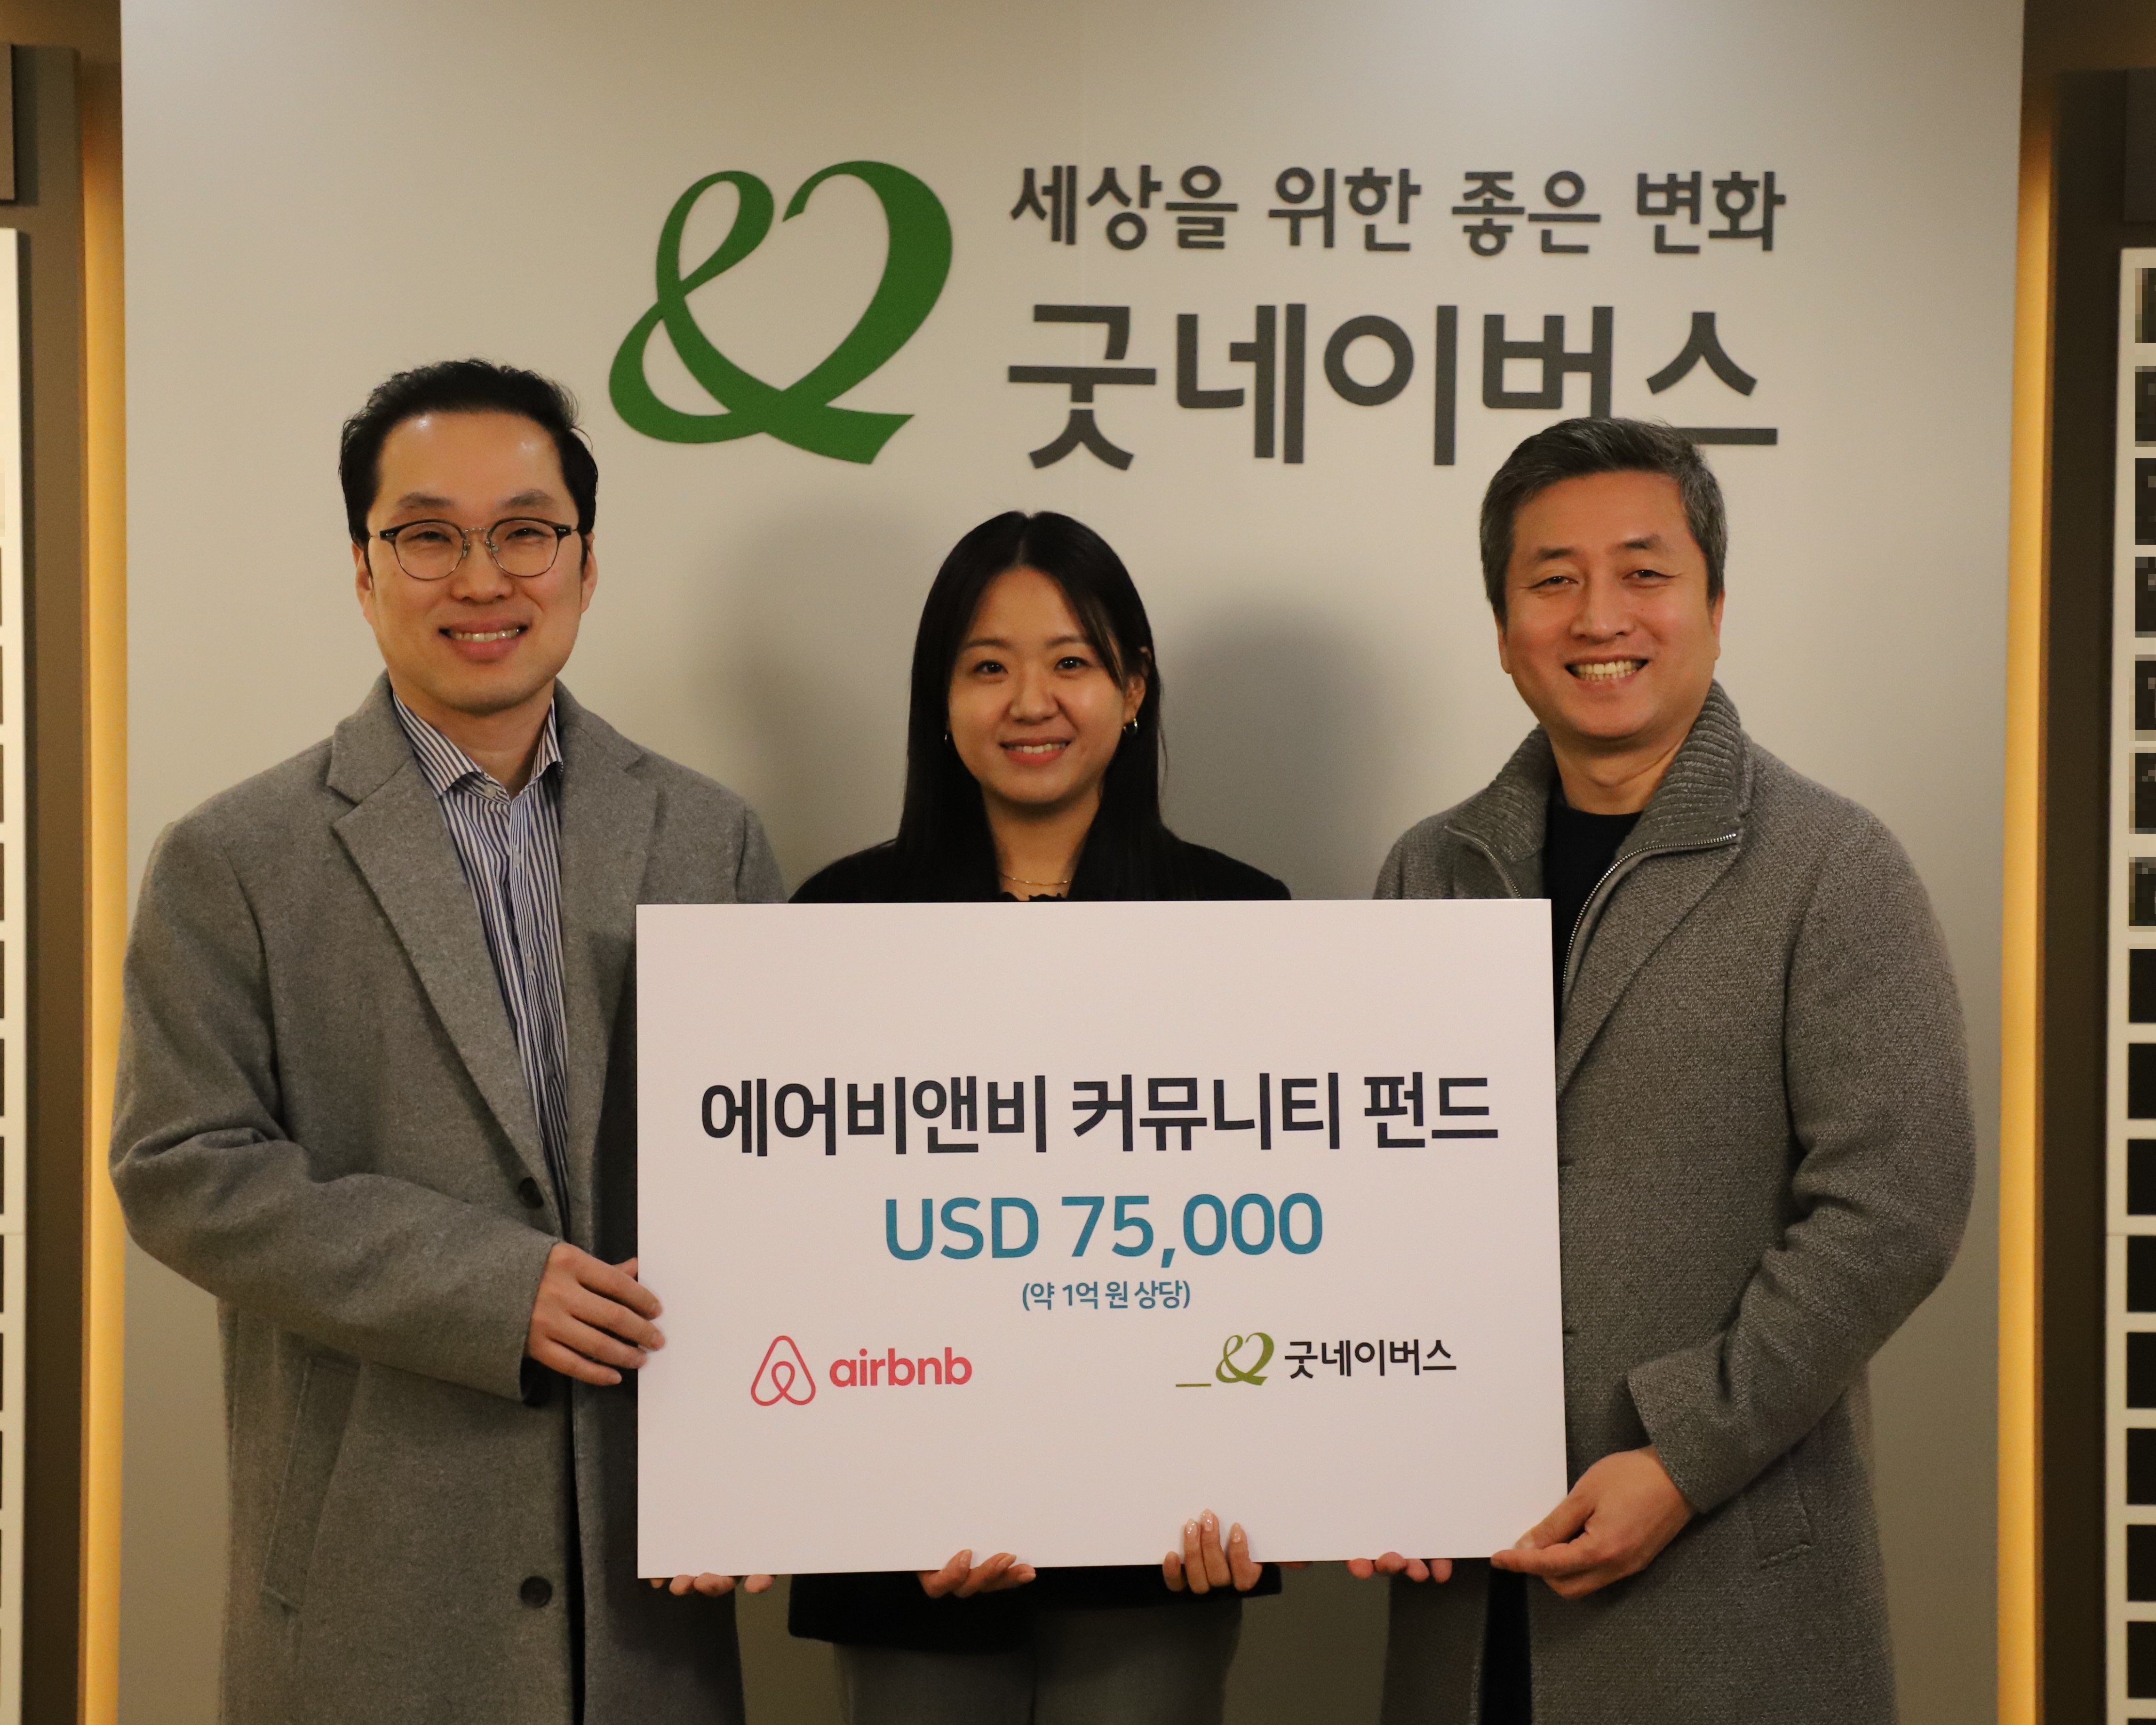 서울 에어비앤비 호스트 커뮤니티 회원의 기금전달식이 진행되고 있습니다.